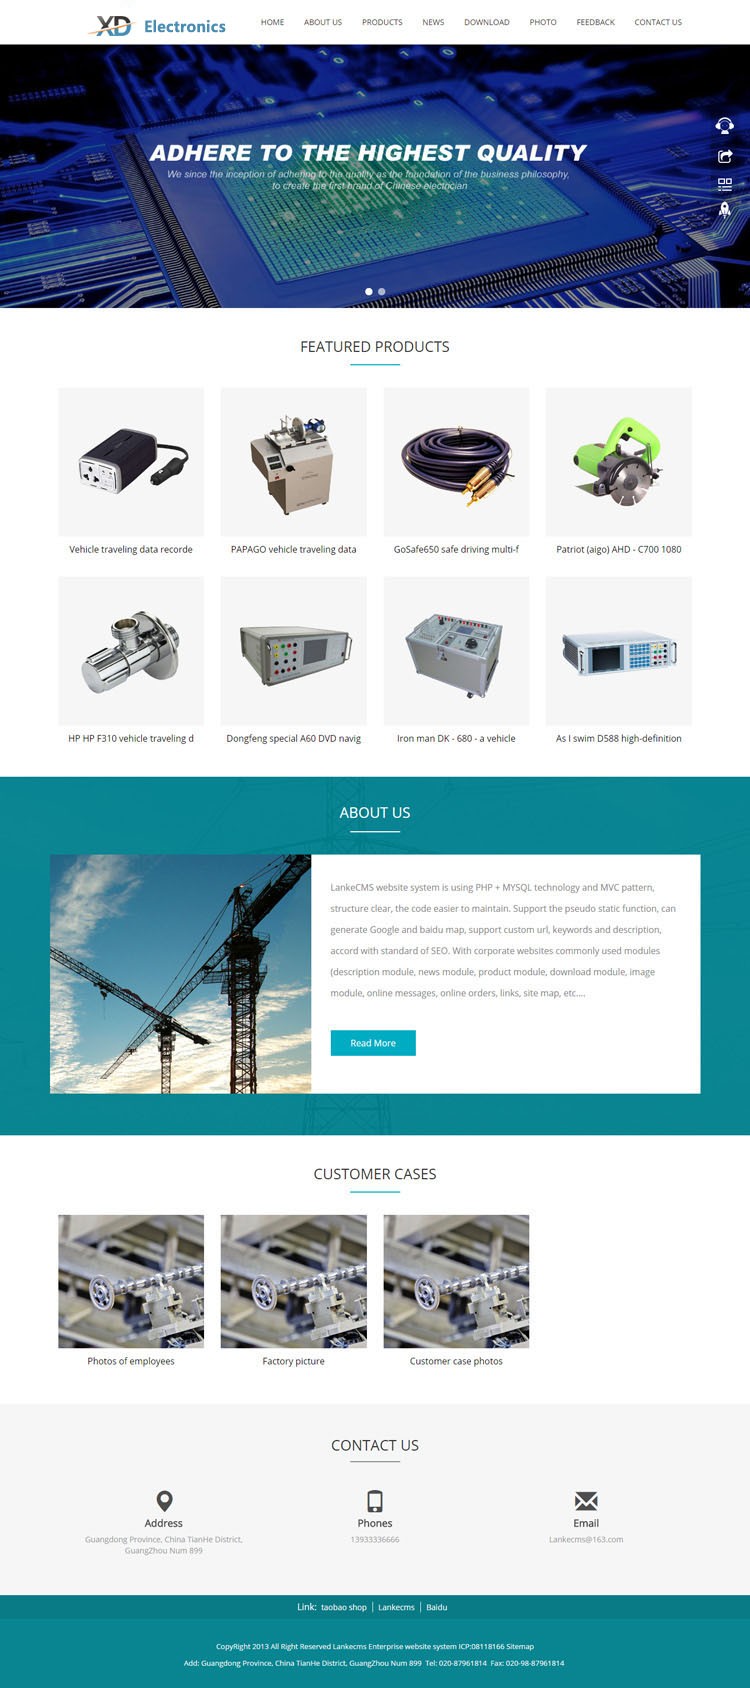 惠州电子仪器公司企业网站定制 数码电子产品生产企业网站制作